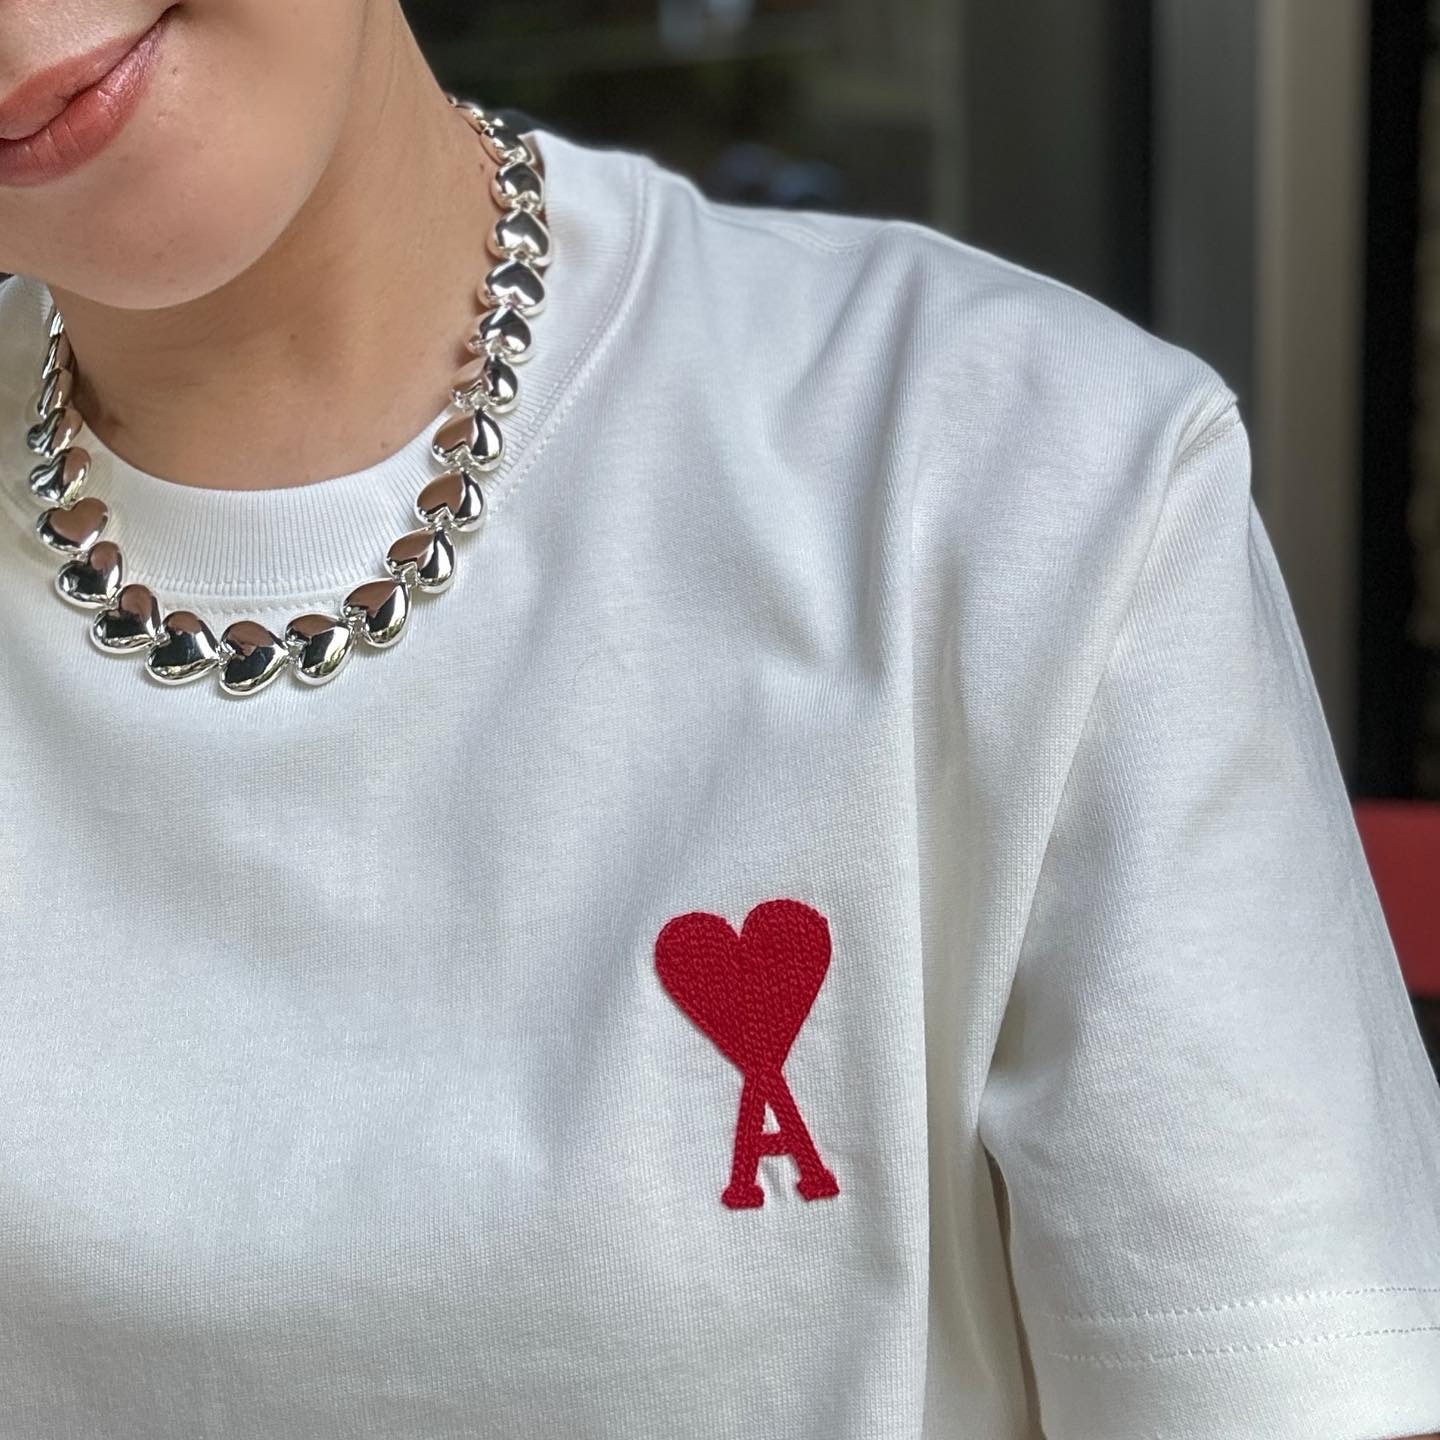 AMI PARIS アミパリス TEE 半袖TシャツUTS004.726 ハートロゴ 刺繍